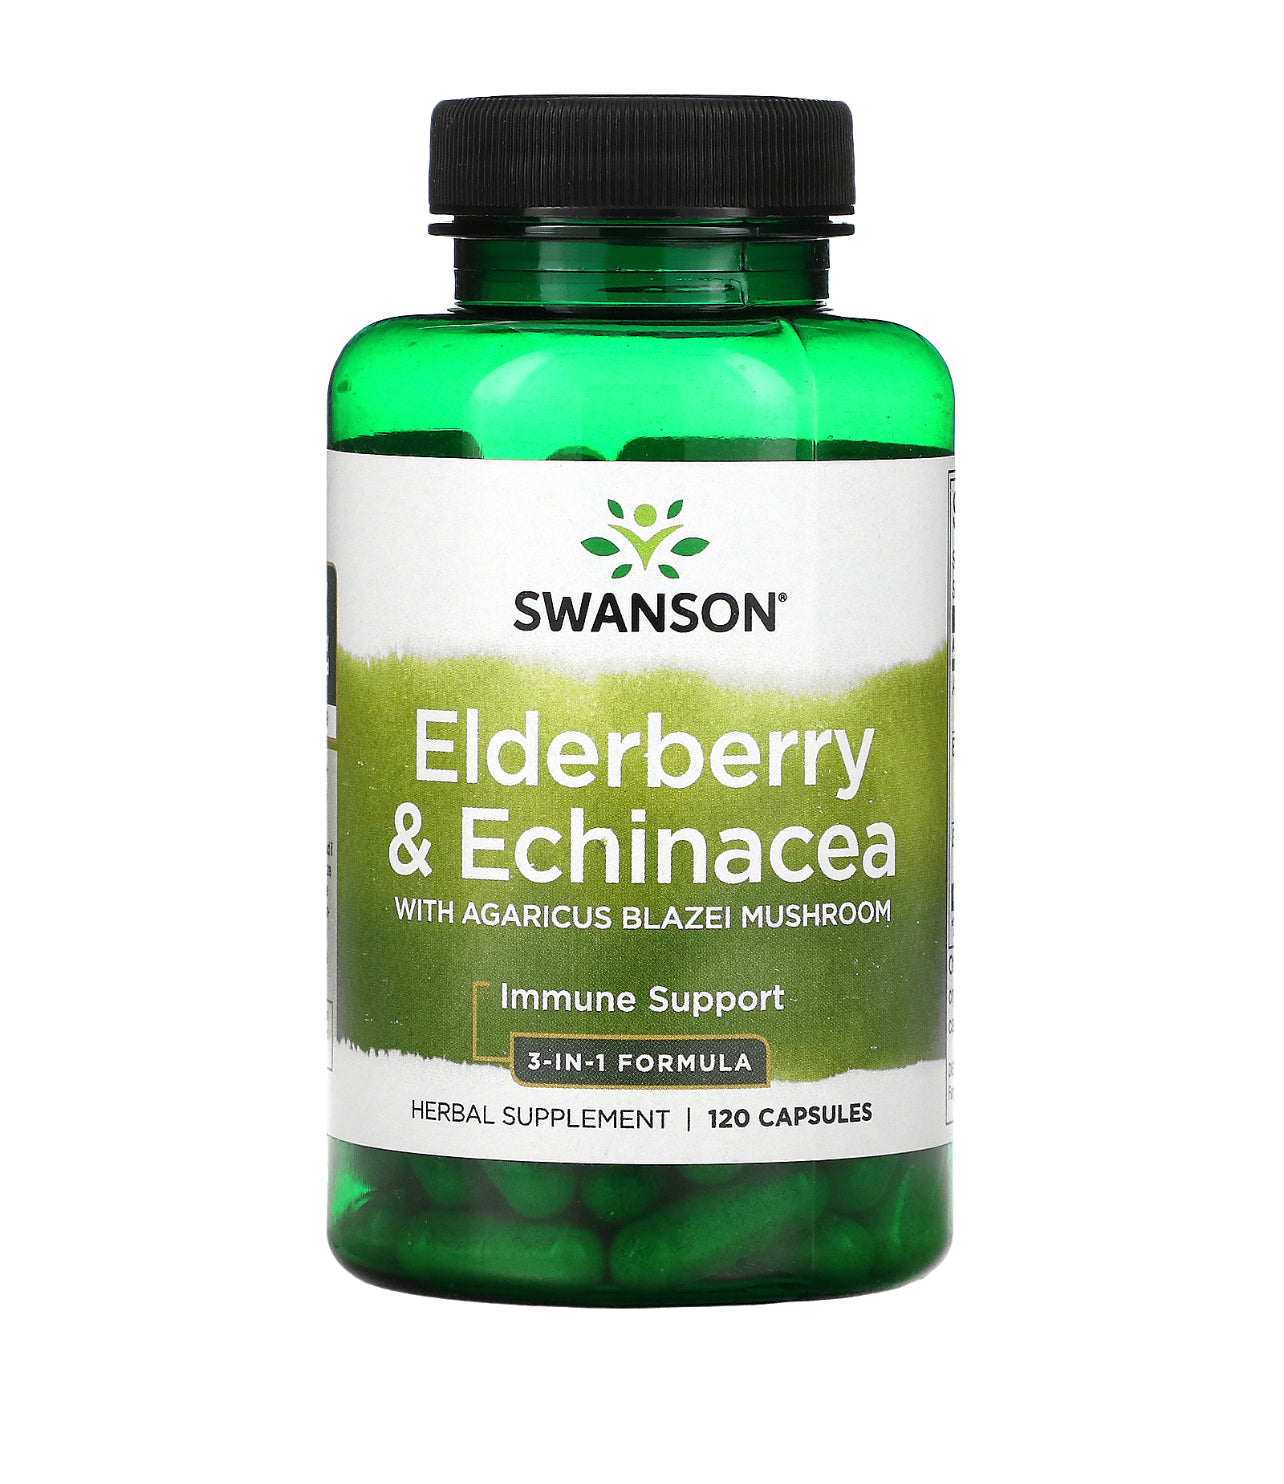 Swanson Elderberry Agaricus Blazei Mushroom & Echinacea Immune Support 120 Capsules